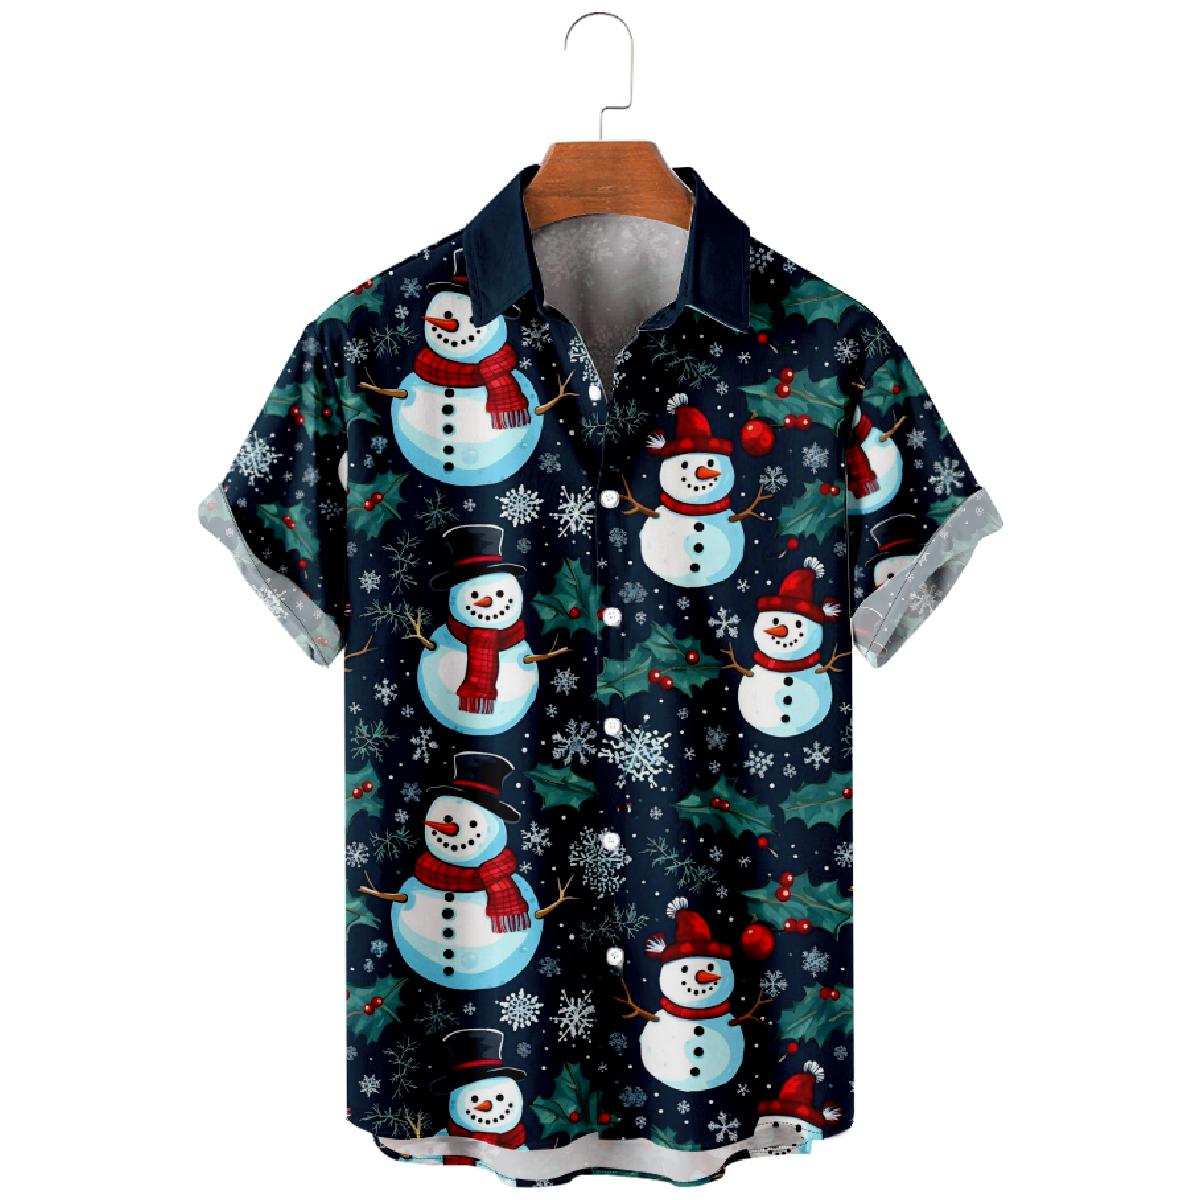 Snowman Hawaiian Shirt Men's Button Up Shirt Short Sleeve Regular Fit 